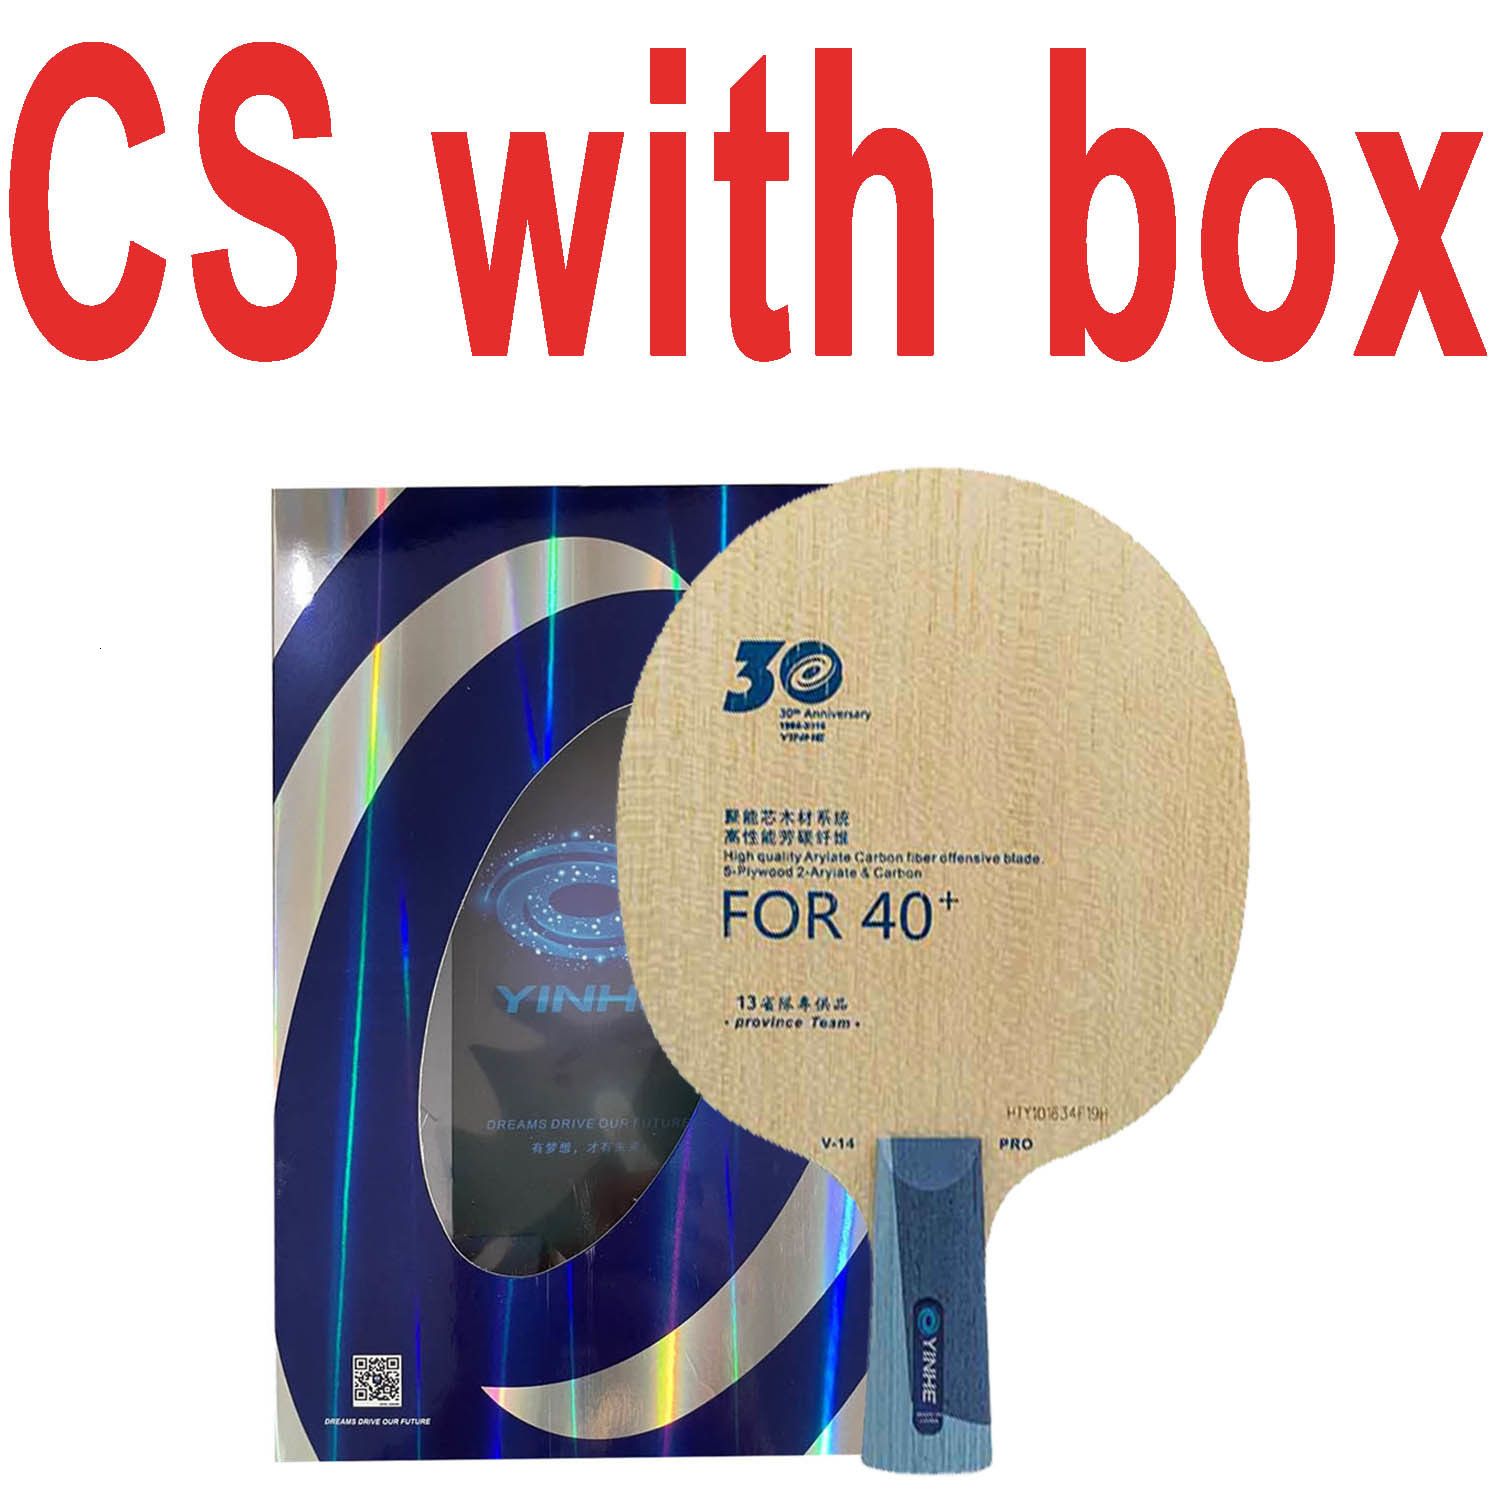 Cs with Box